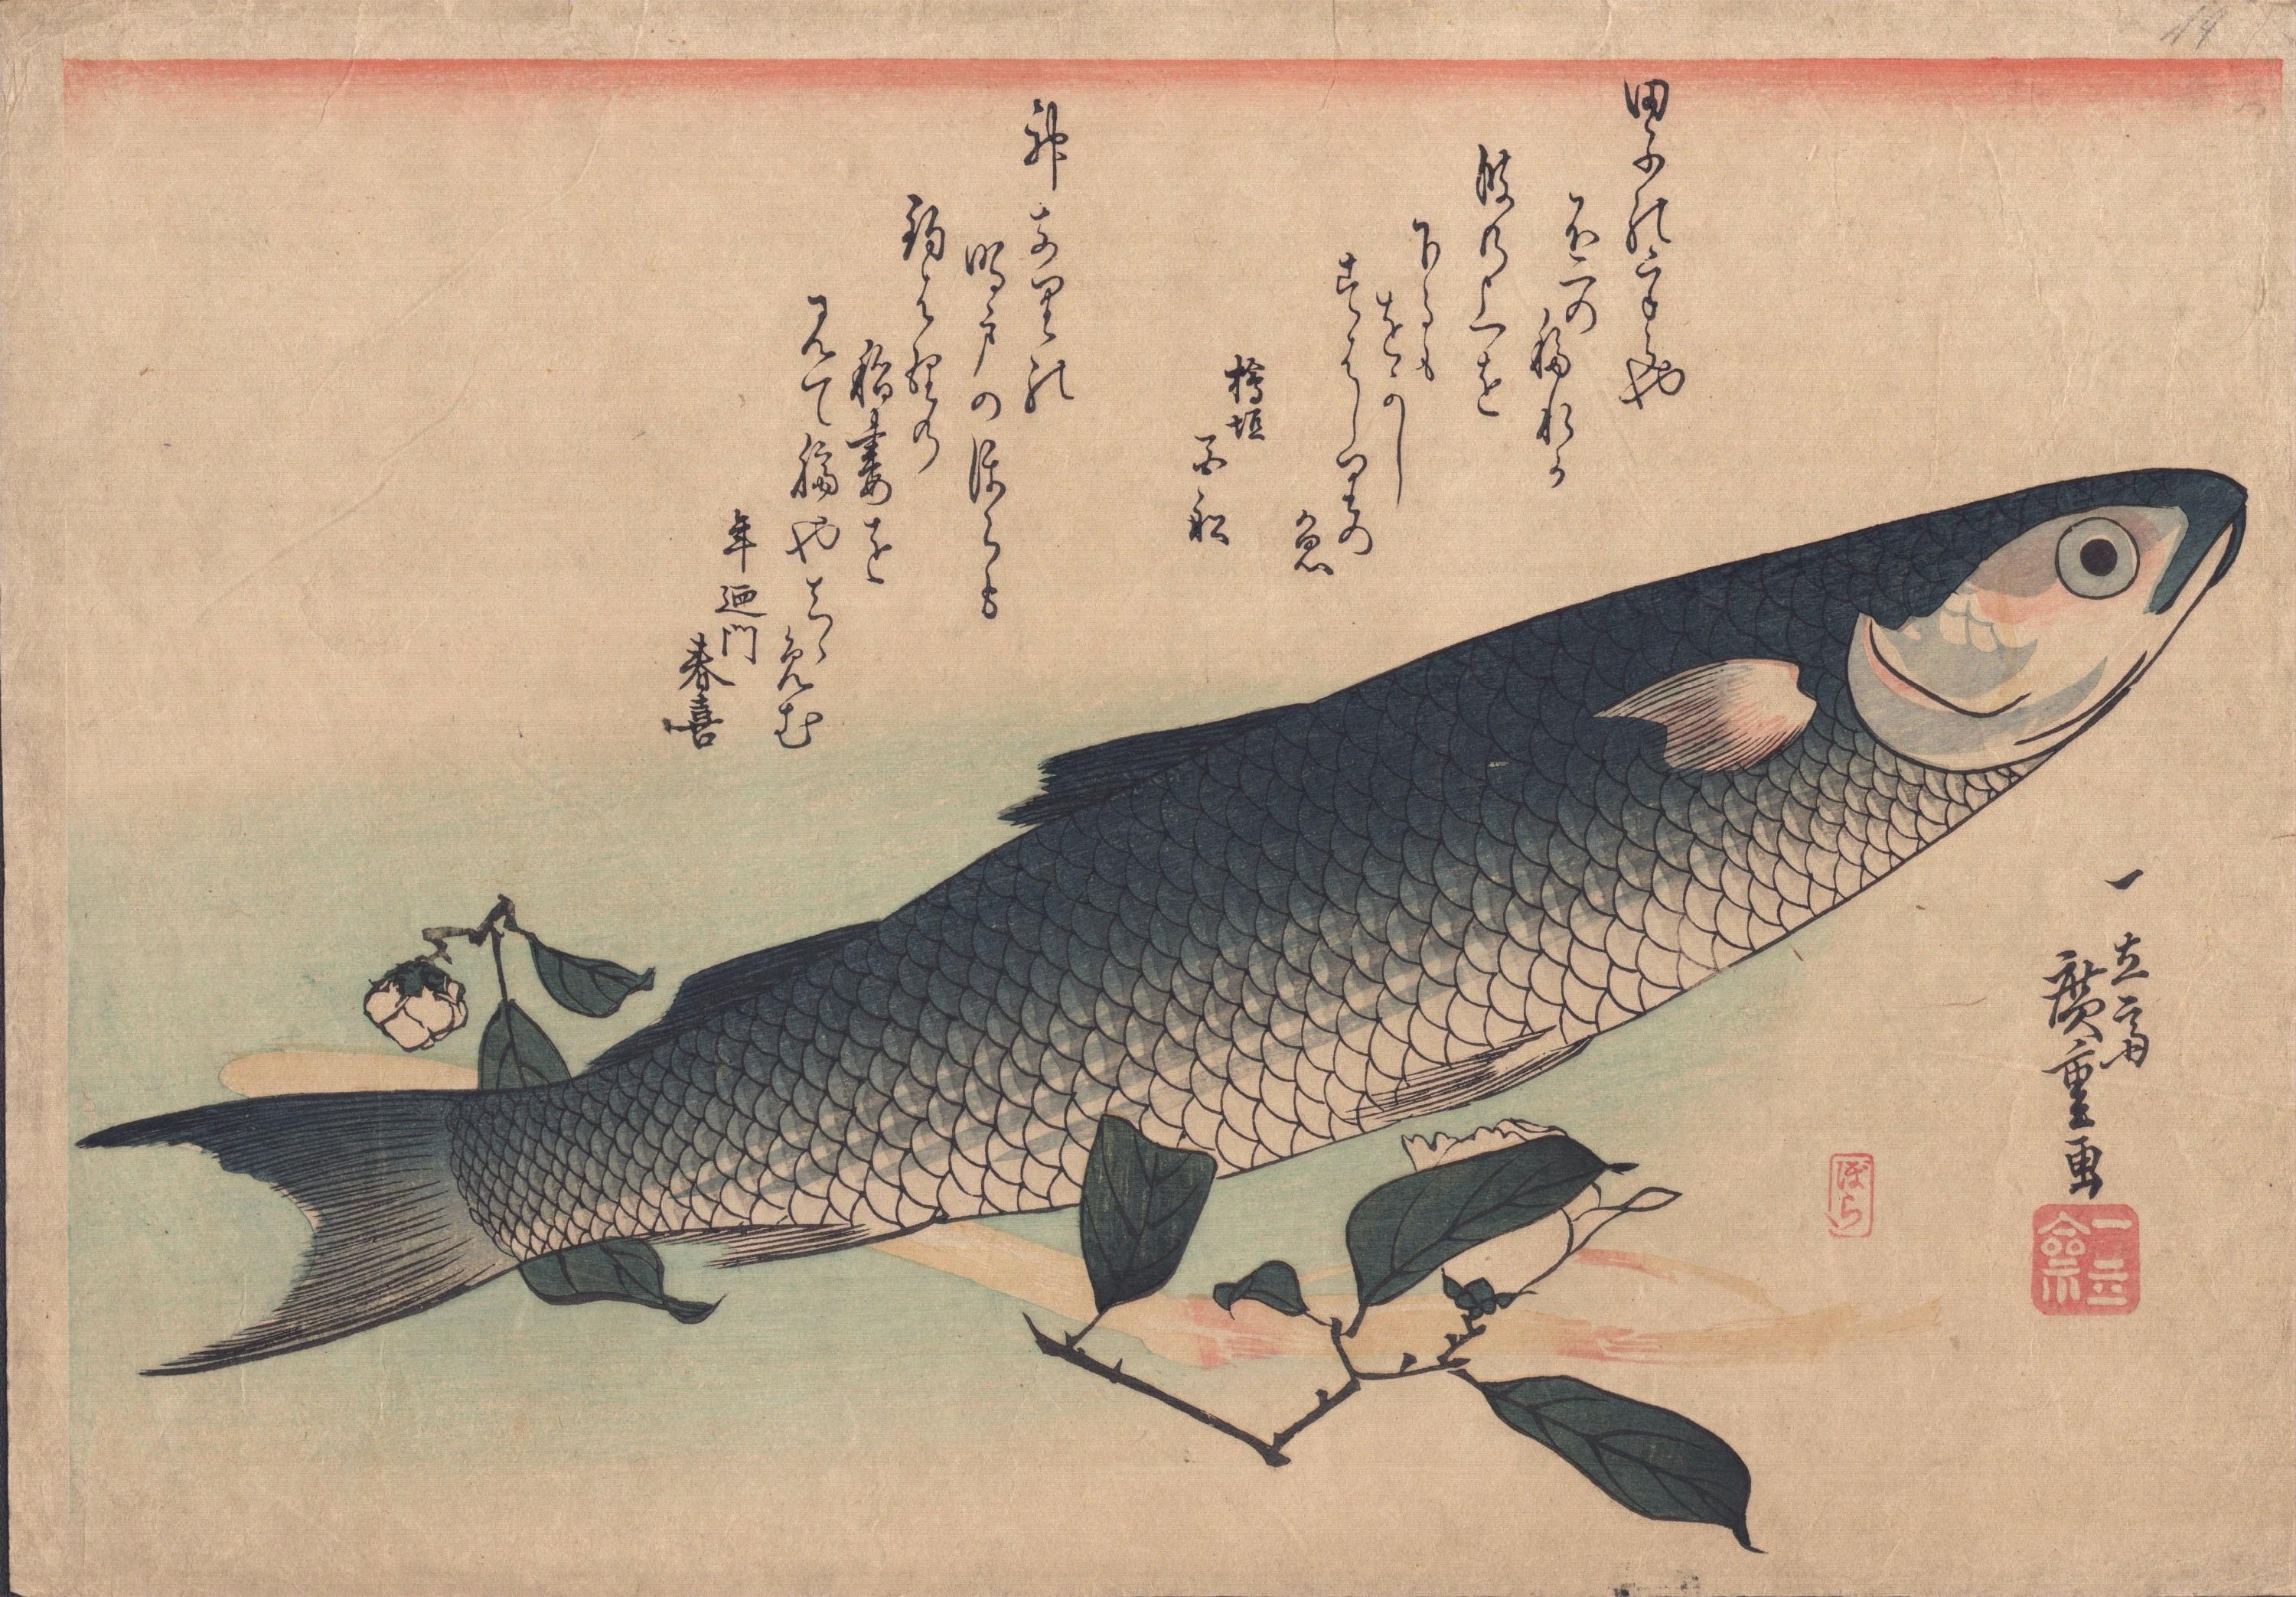 Utagawa Hiroshige (1797 - 1858)

Meeräsche, Spargel und Kamelie (魚尽くし ぼら、うど、椿),  aus einer Serie mit dem Namen Large Fish 

Größe: Oban, 38 * 26,5 cm 

Edo-Periode

Ausgezeichneter Druck und Farbe